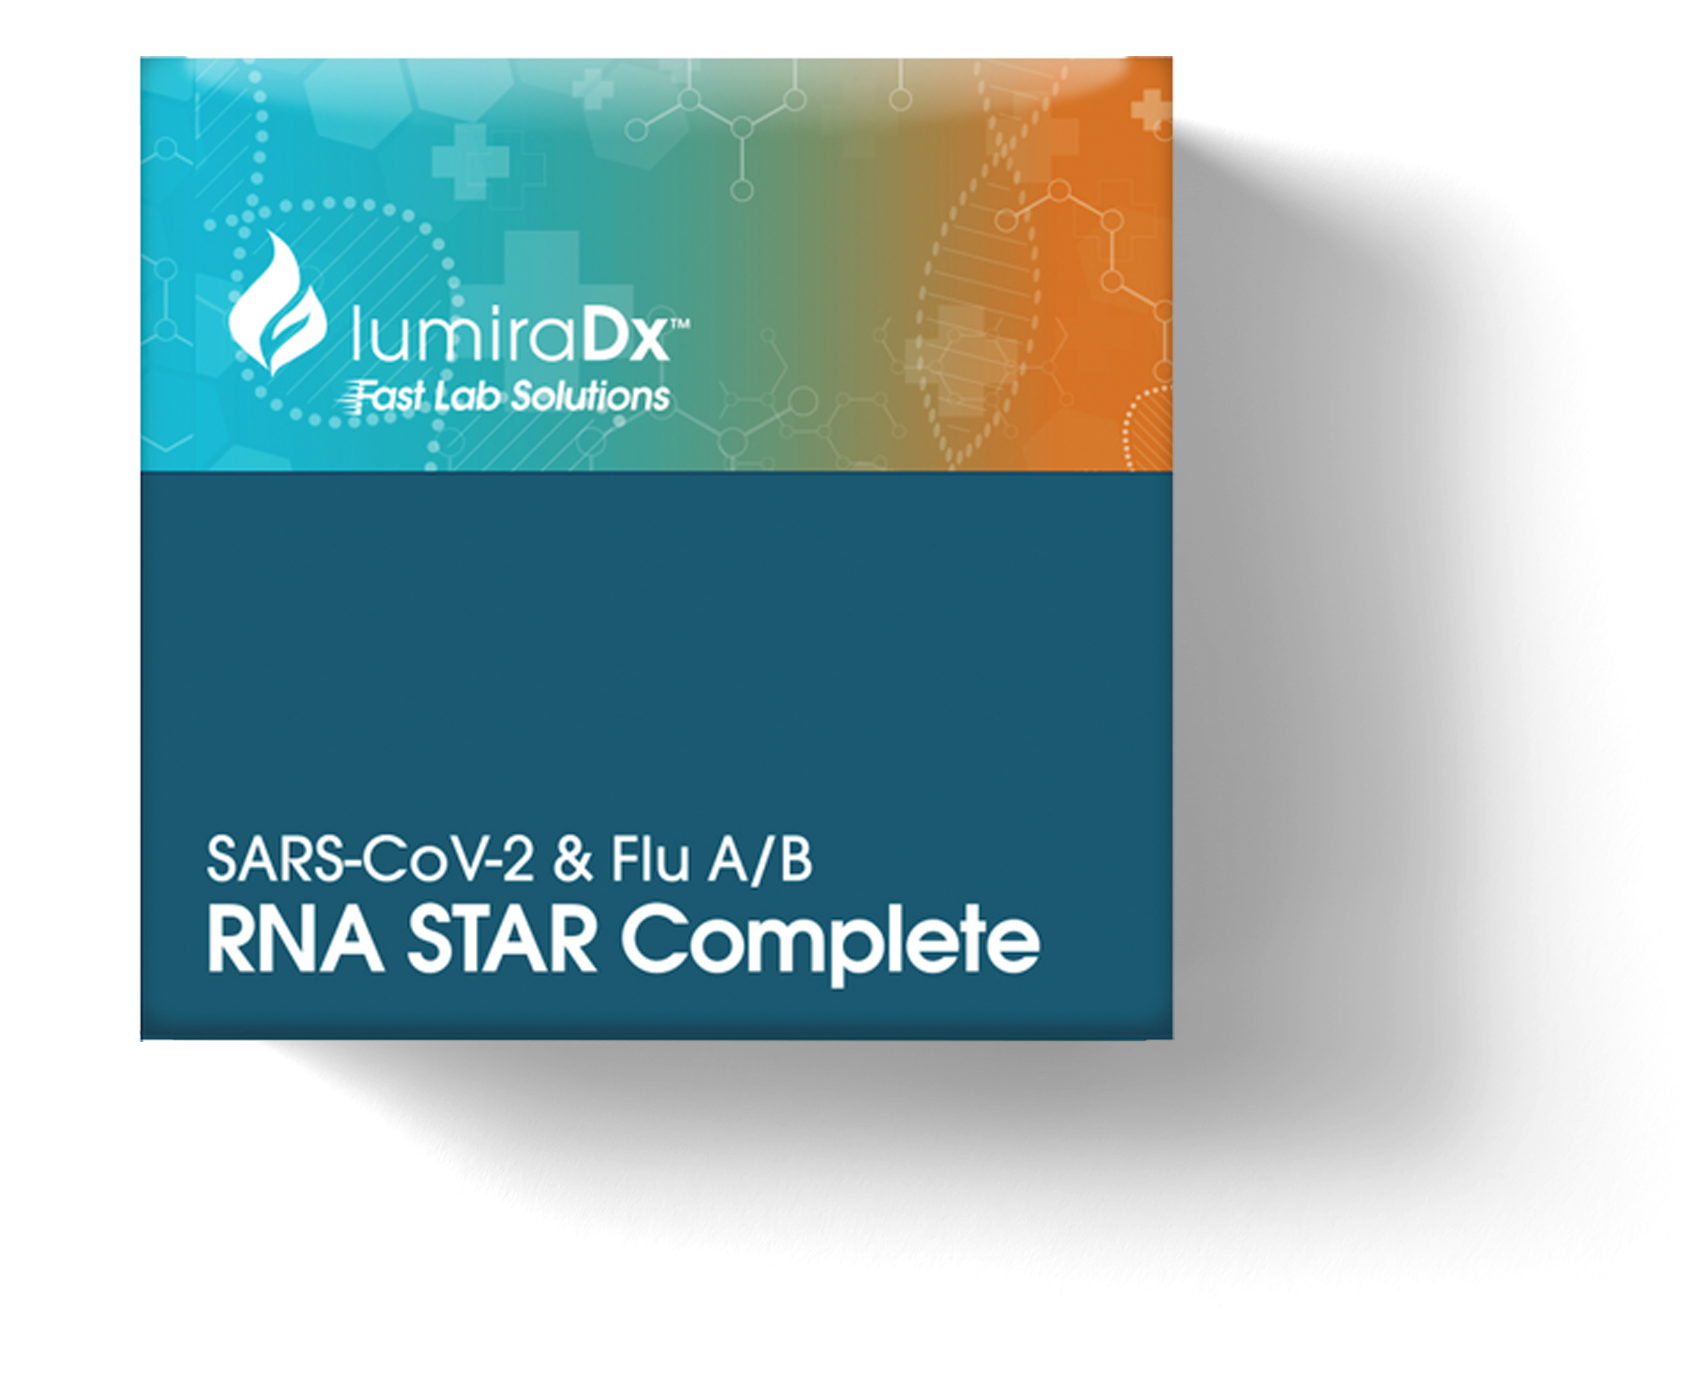 SARS-CoV-2 & Flu A/B RNA STAR Complete